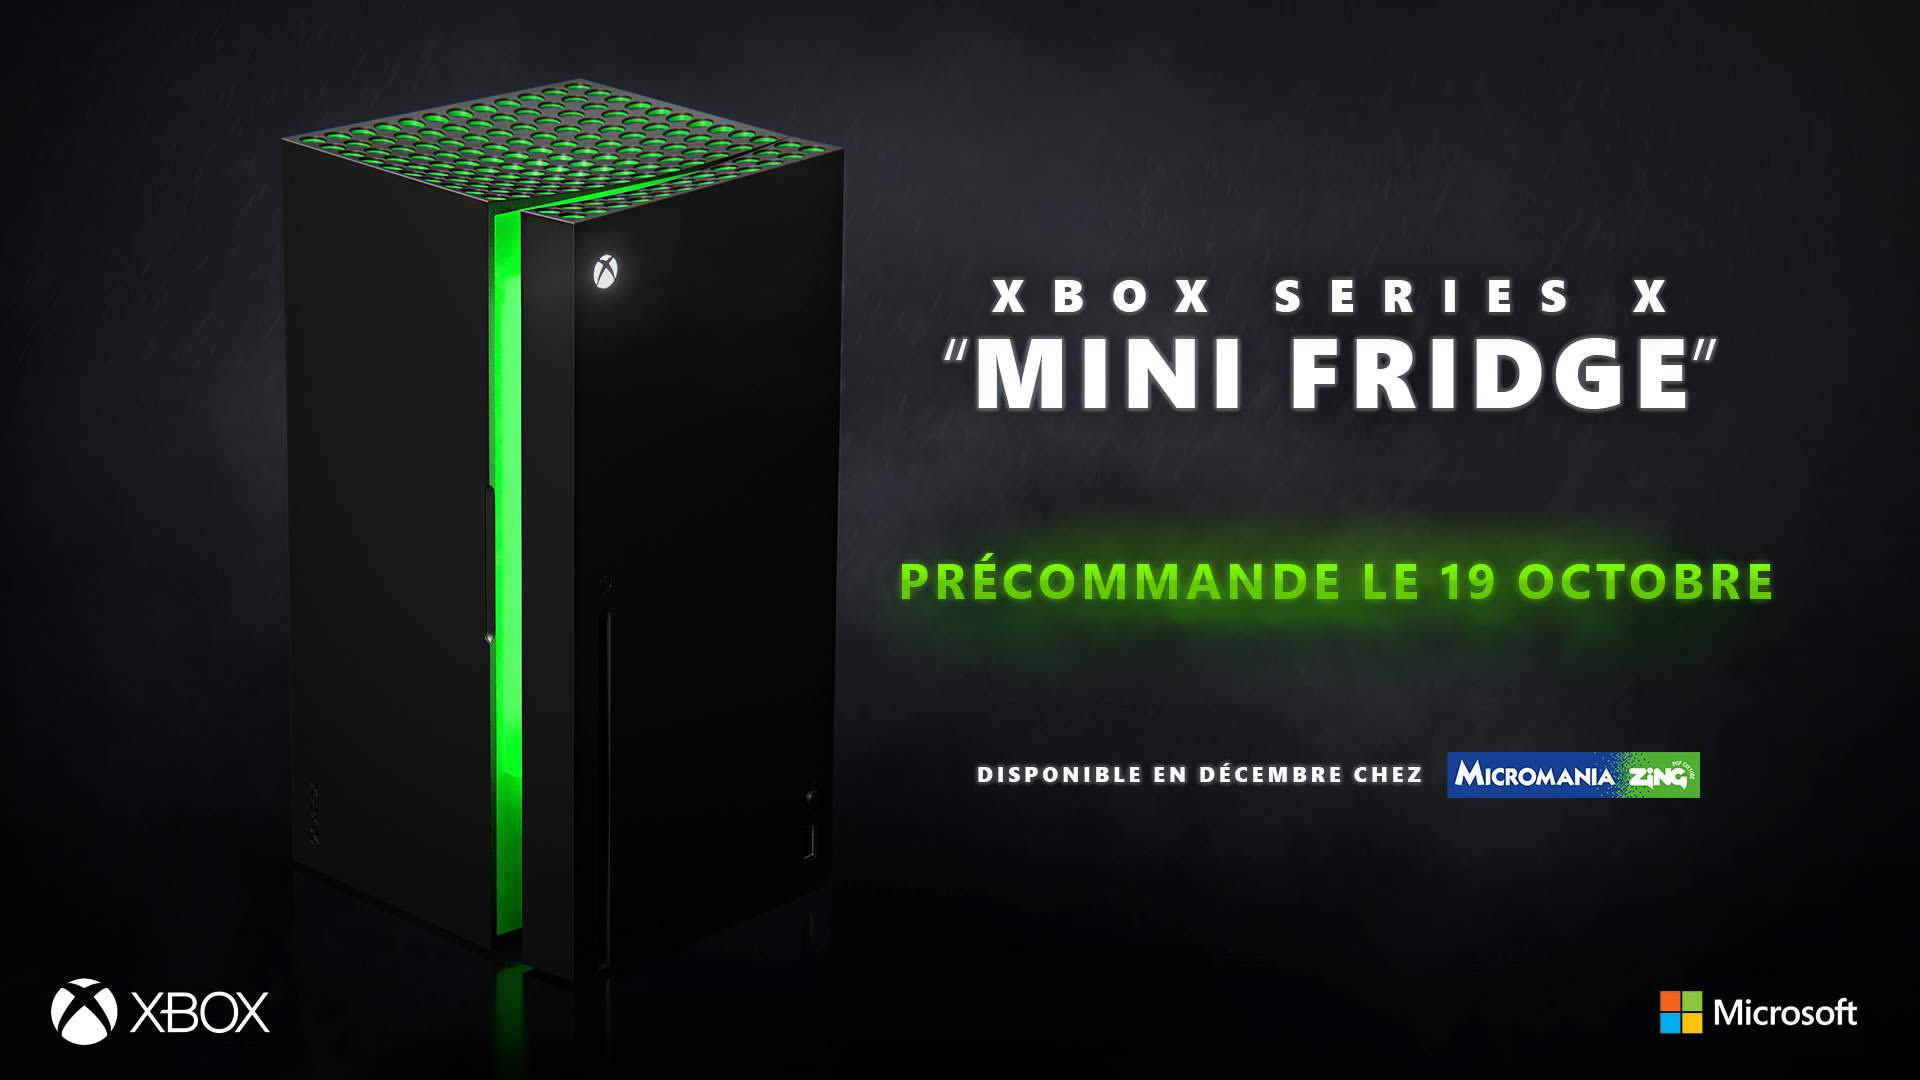 Où acheter le mini frigo Xbox Series X ?